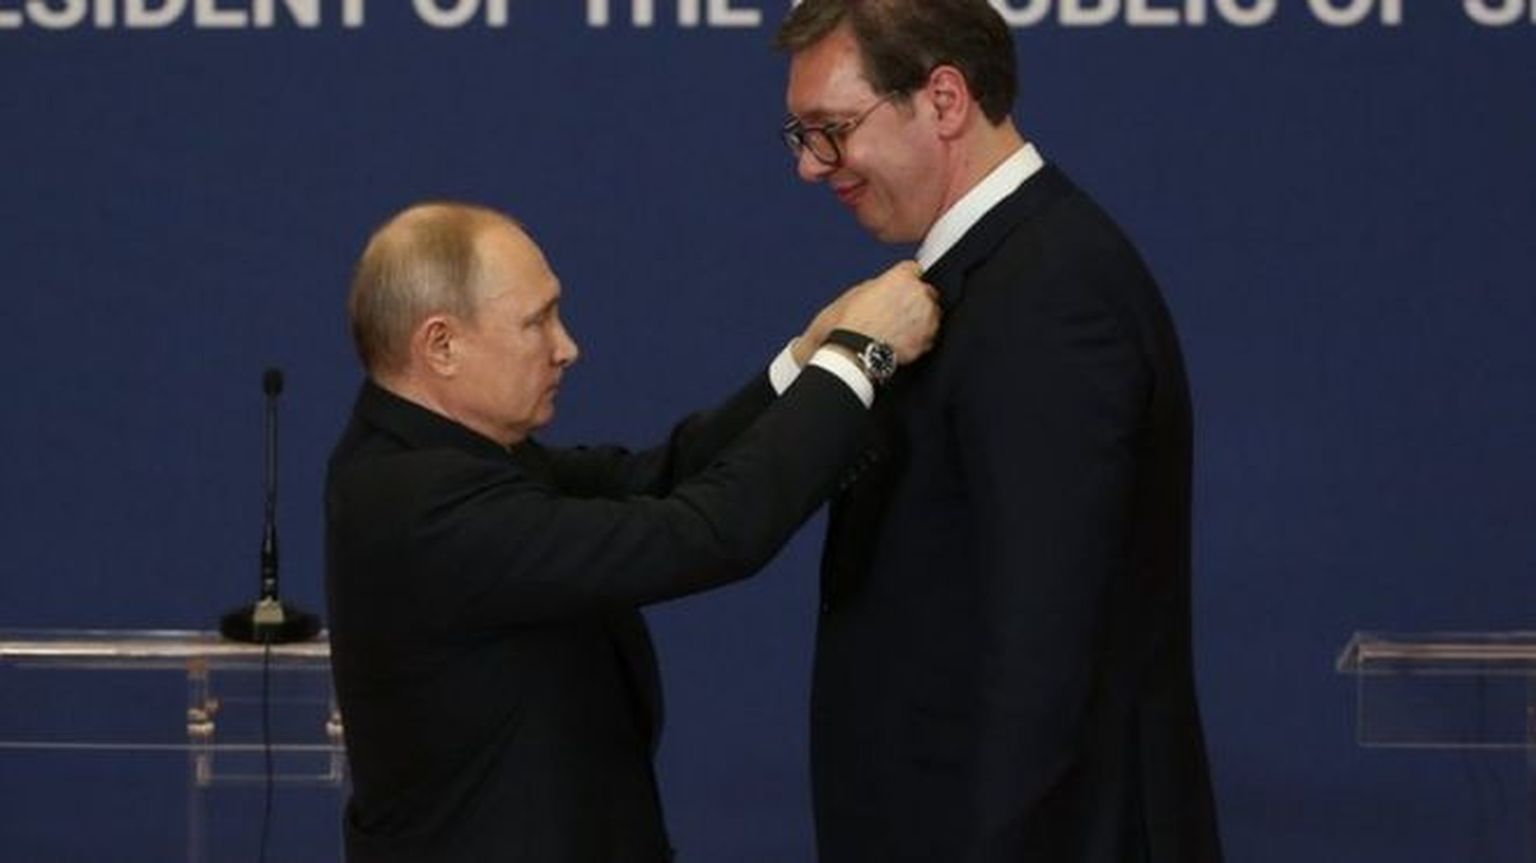 "Путин отлично понимает проблемы Сербии, не зря он мне дал орден Александра Невского", - заявил Вучич